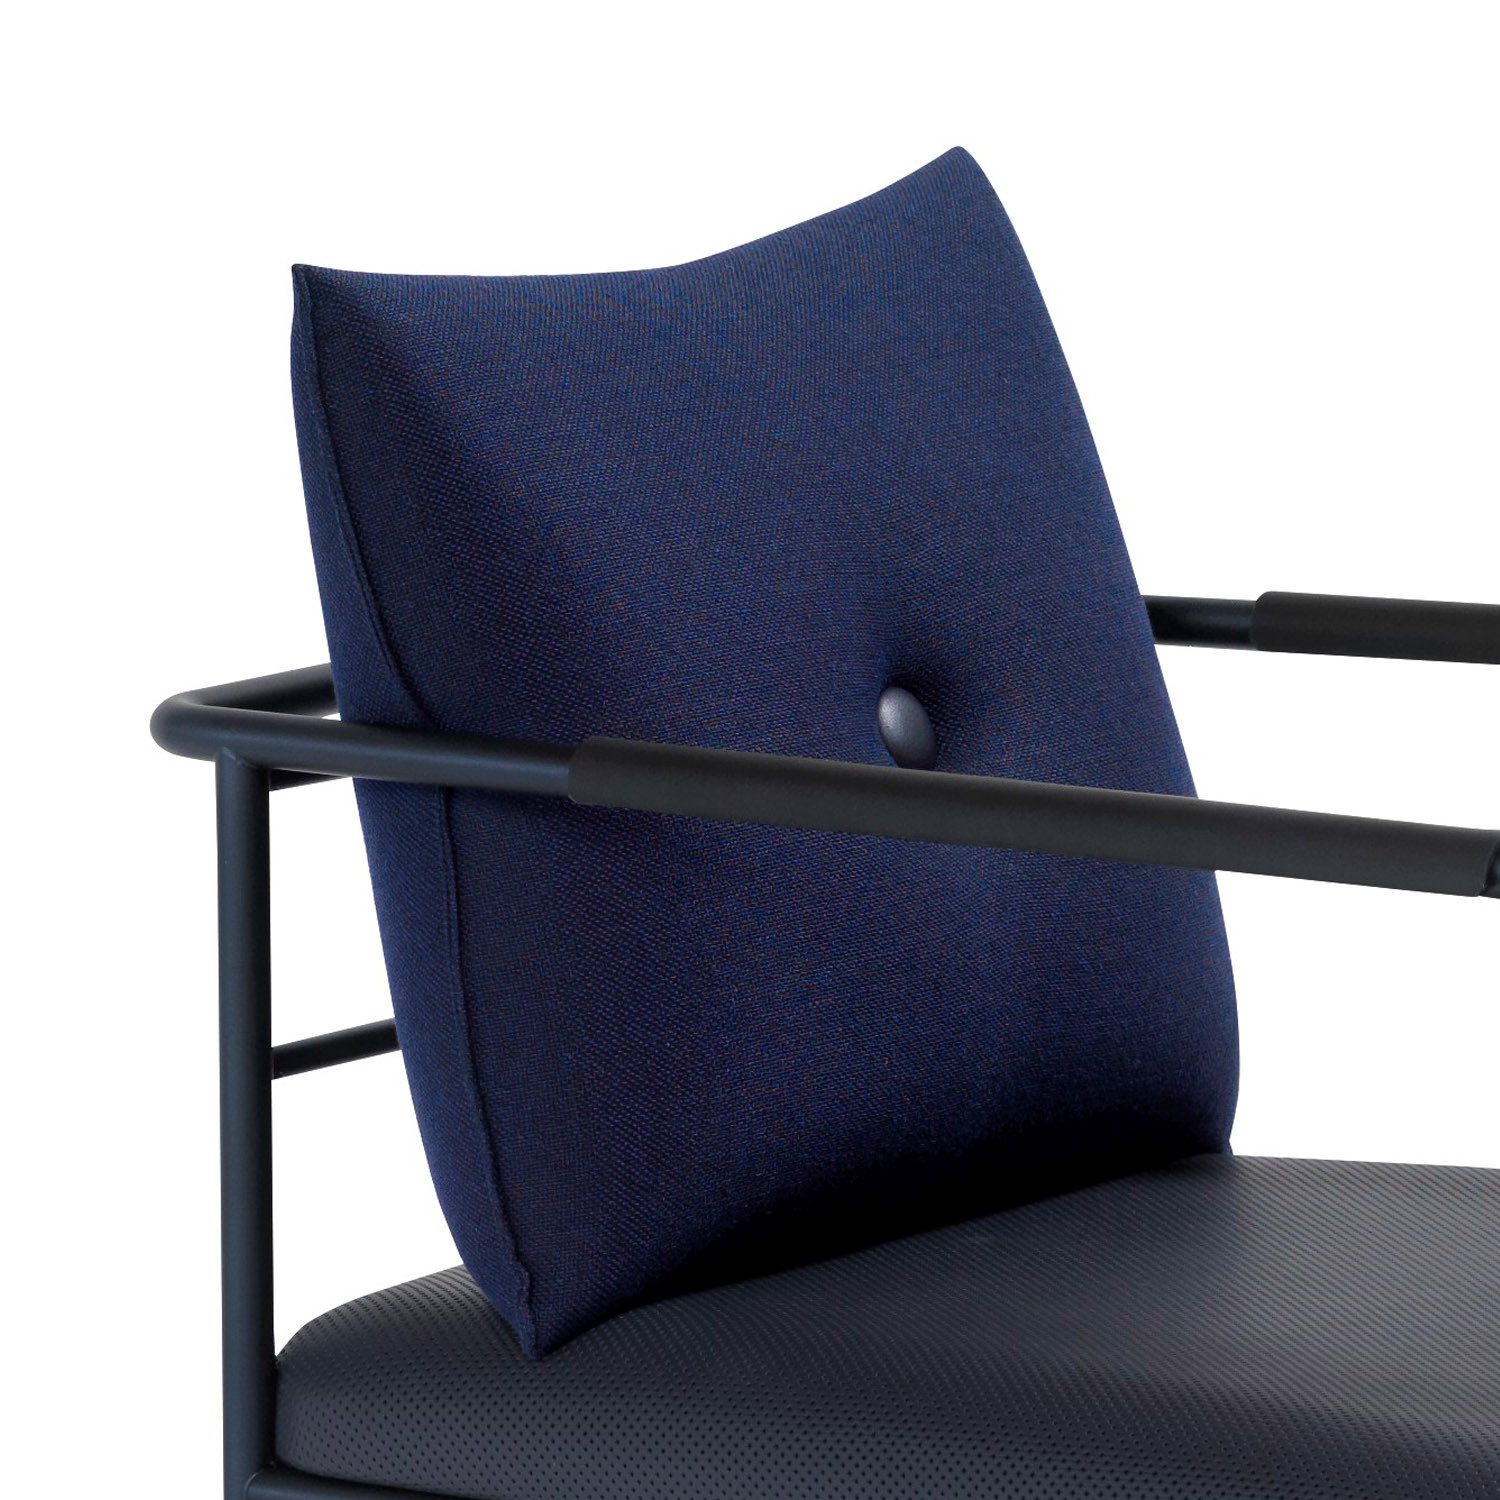 Morris JR Chair Back Cushion Detail